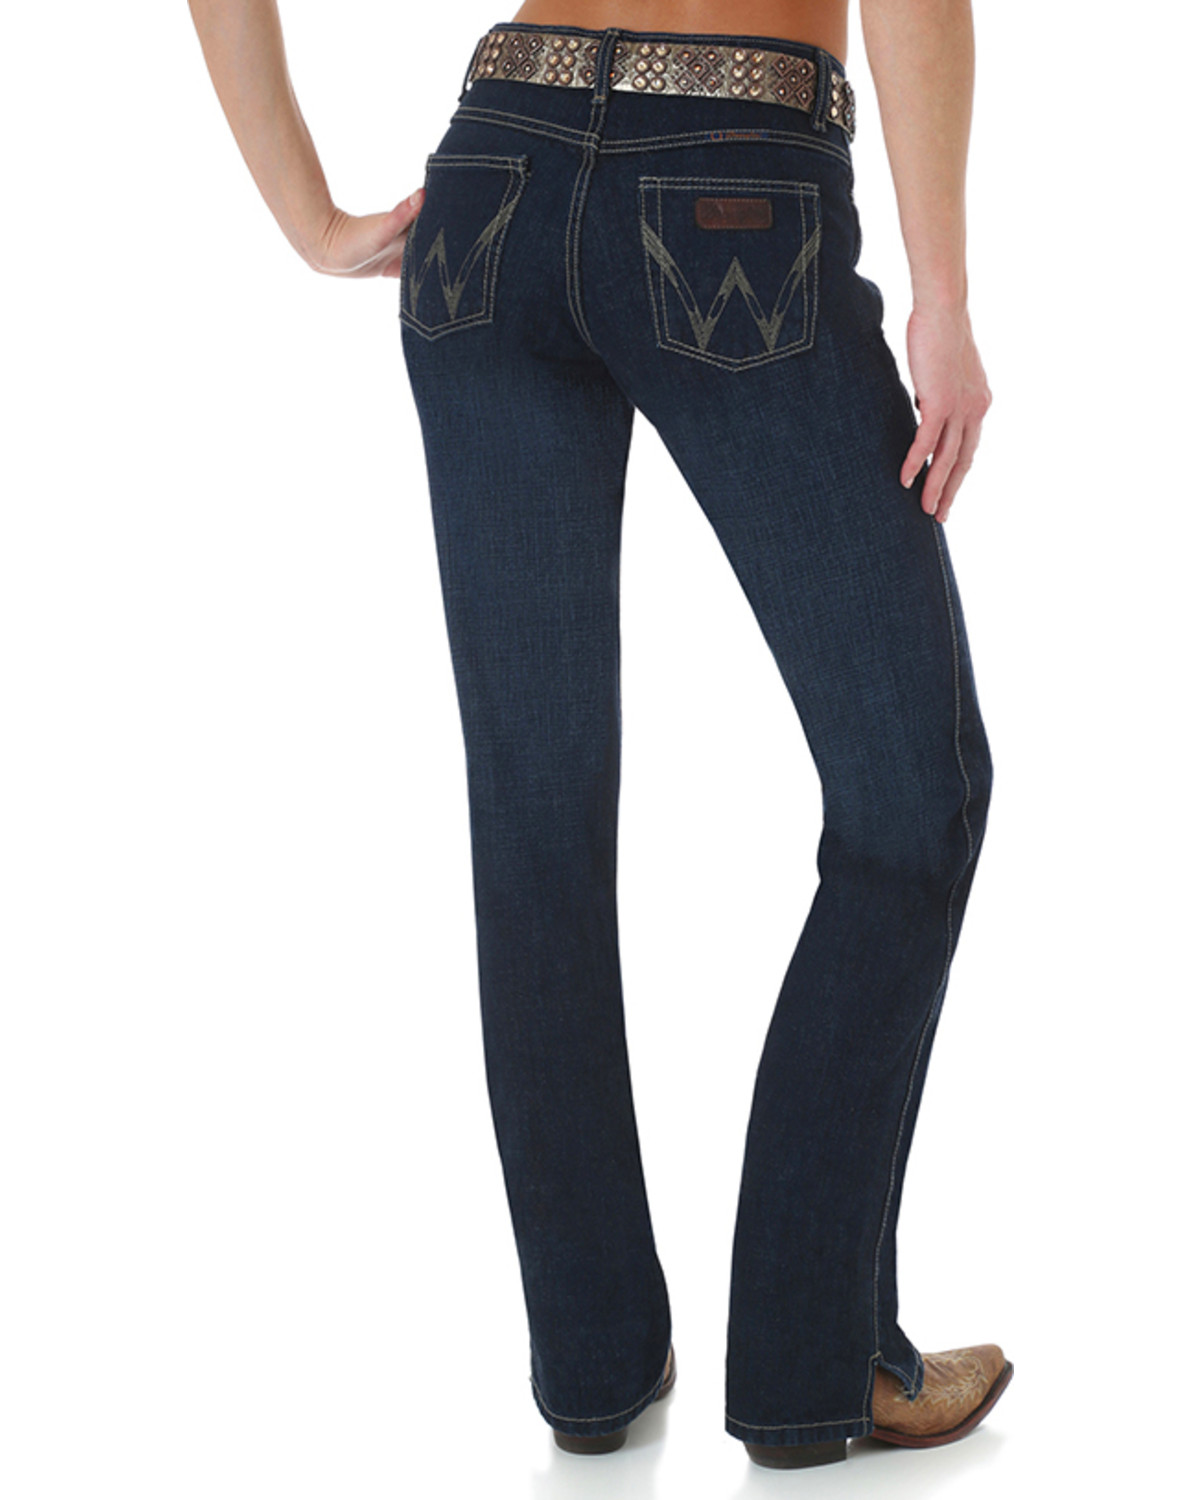 Wrangler Size Chart Women S Jeans